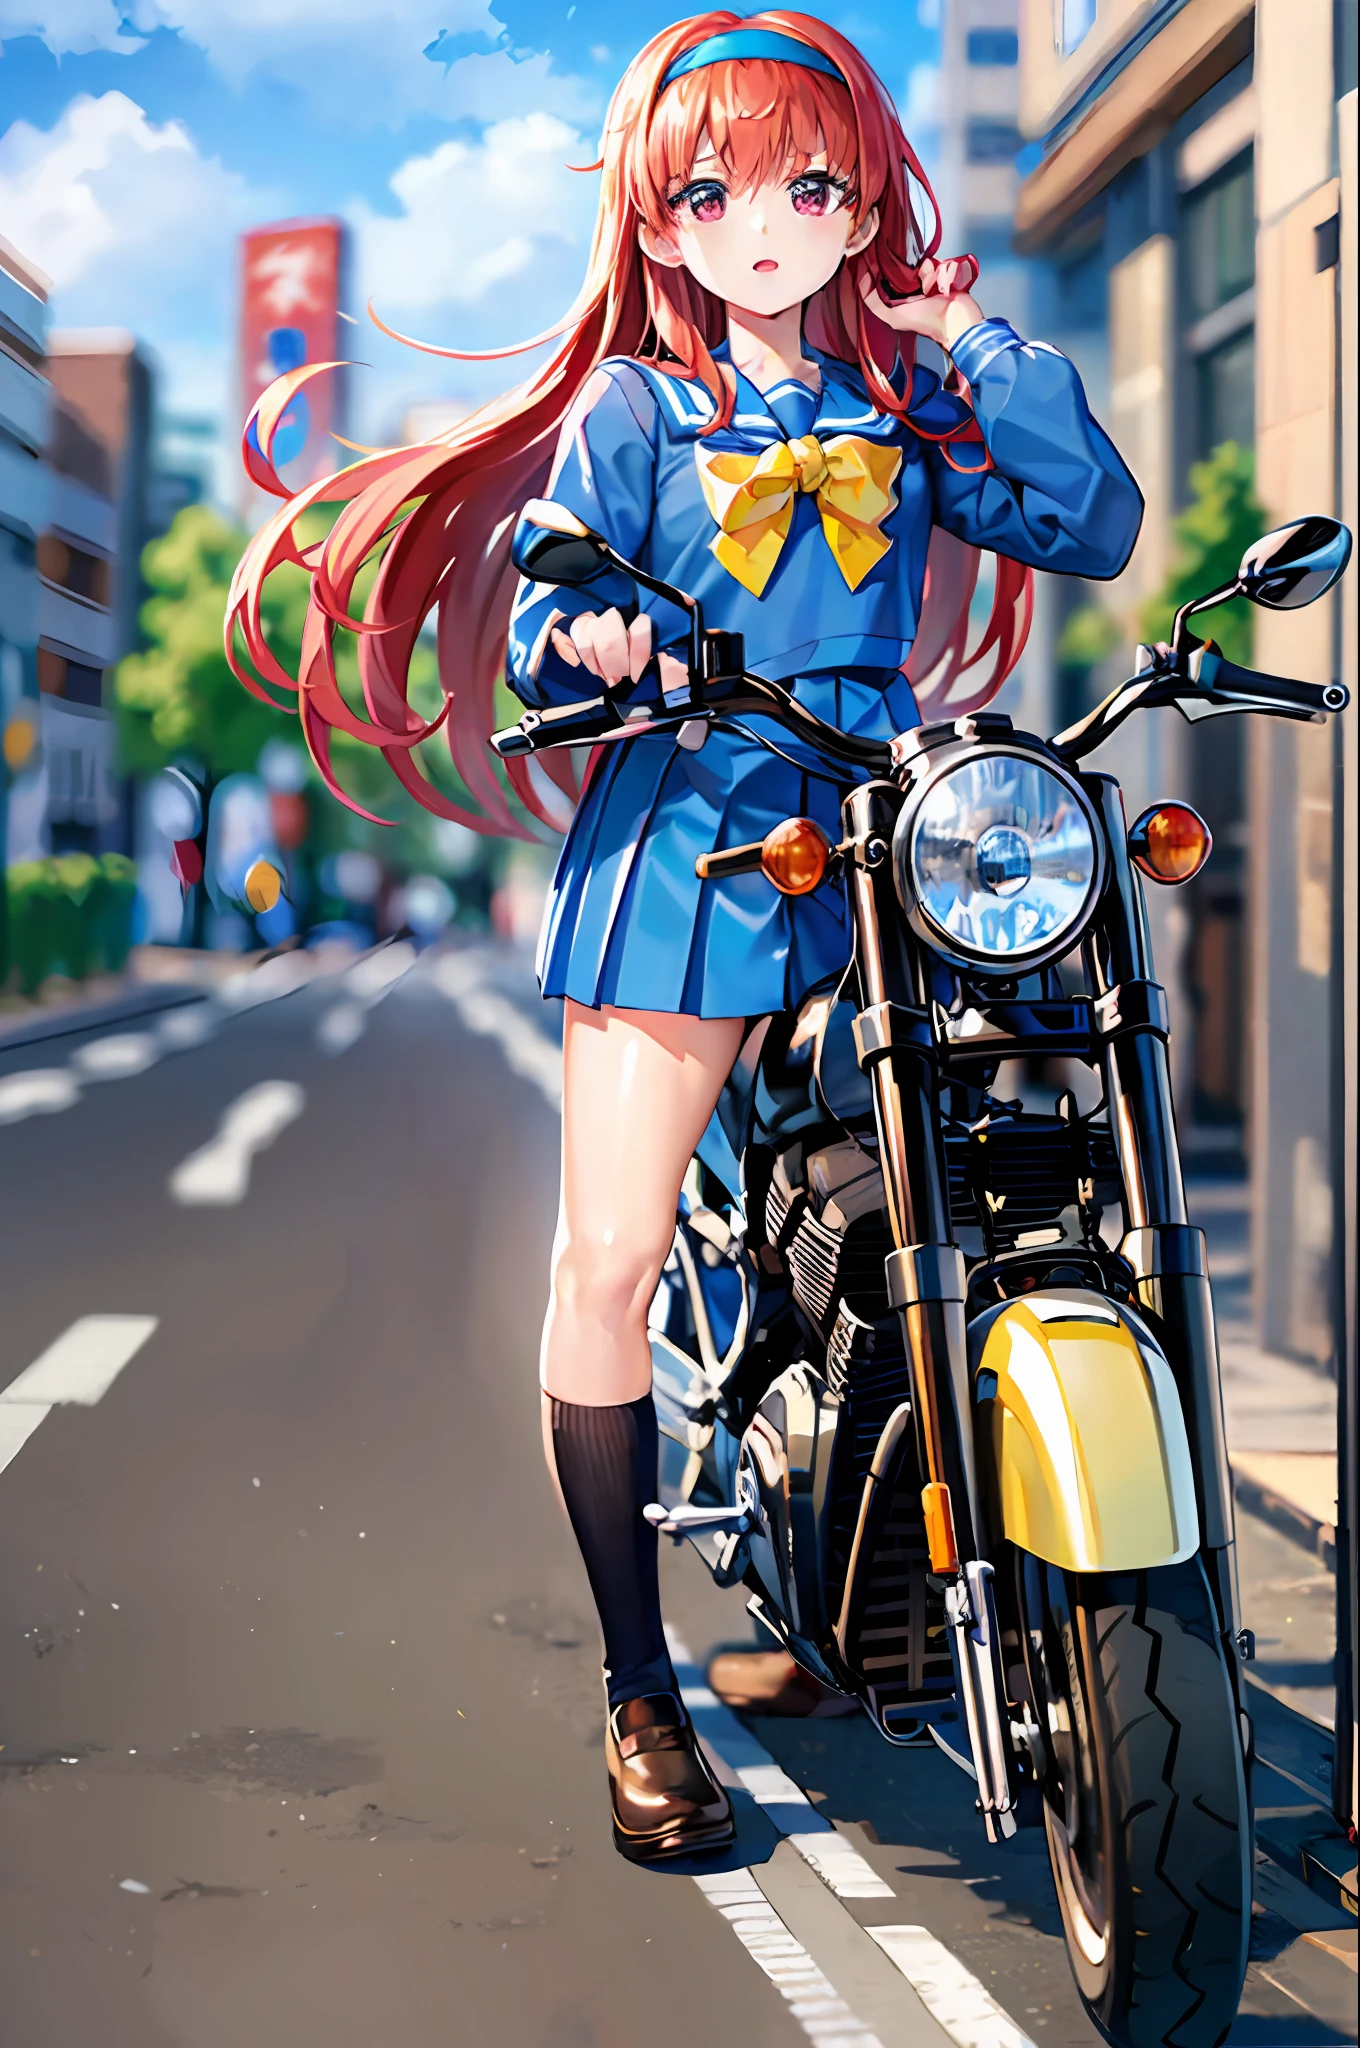 ((Obra maestra)), ((mejor calidad)), (ultra detallado), ((kawaii)), lindo, (Hermoso), ((extremadamente detallado)), 4k, (8k), 1 chica, mejor calidad, (hermoso), shiori fujisaki, diadema amarilla, Moño amarillo, blue , serafín azul, mangas largas, falda plisada azul, pelo largo rojo, en motocicleta, Conducir una motocicleta